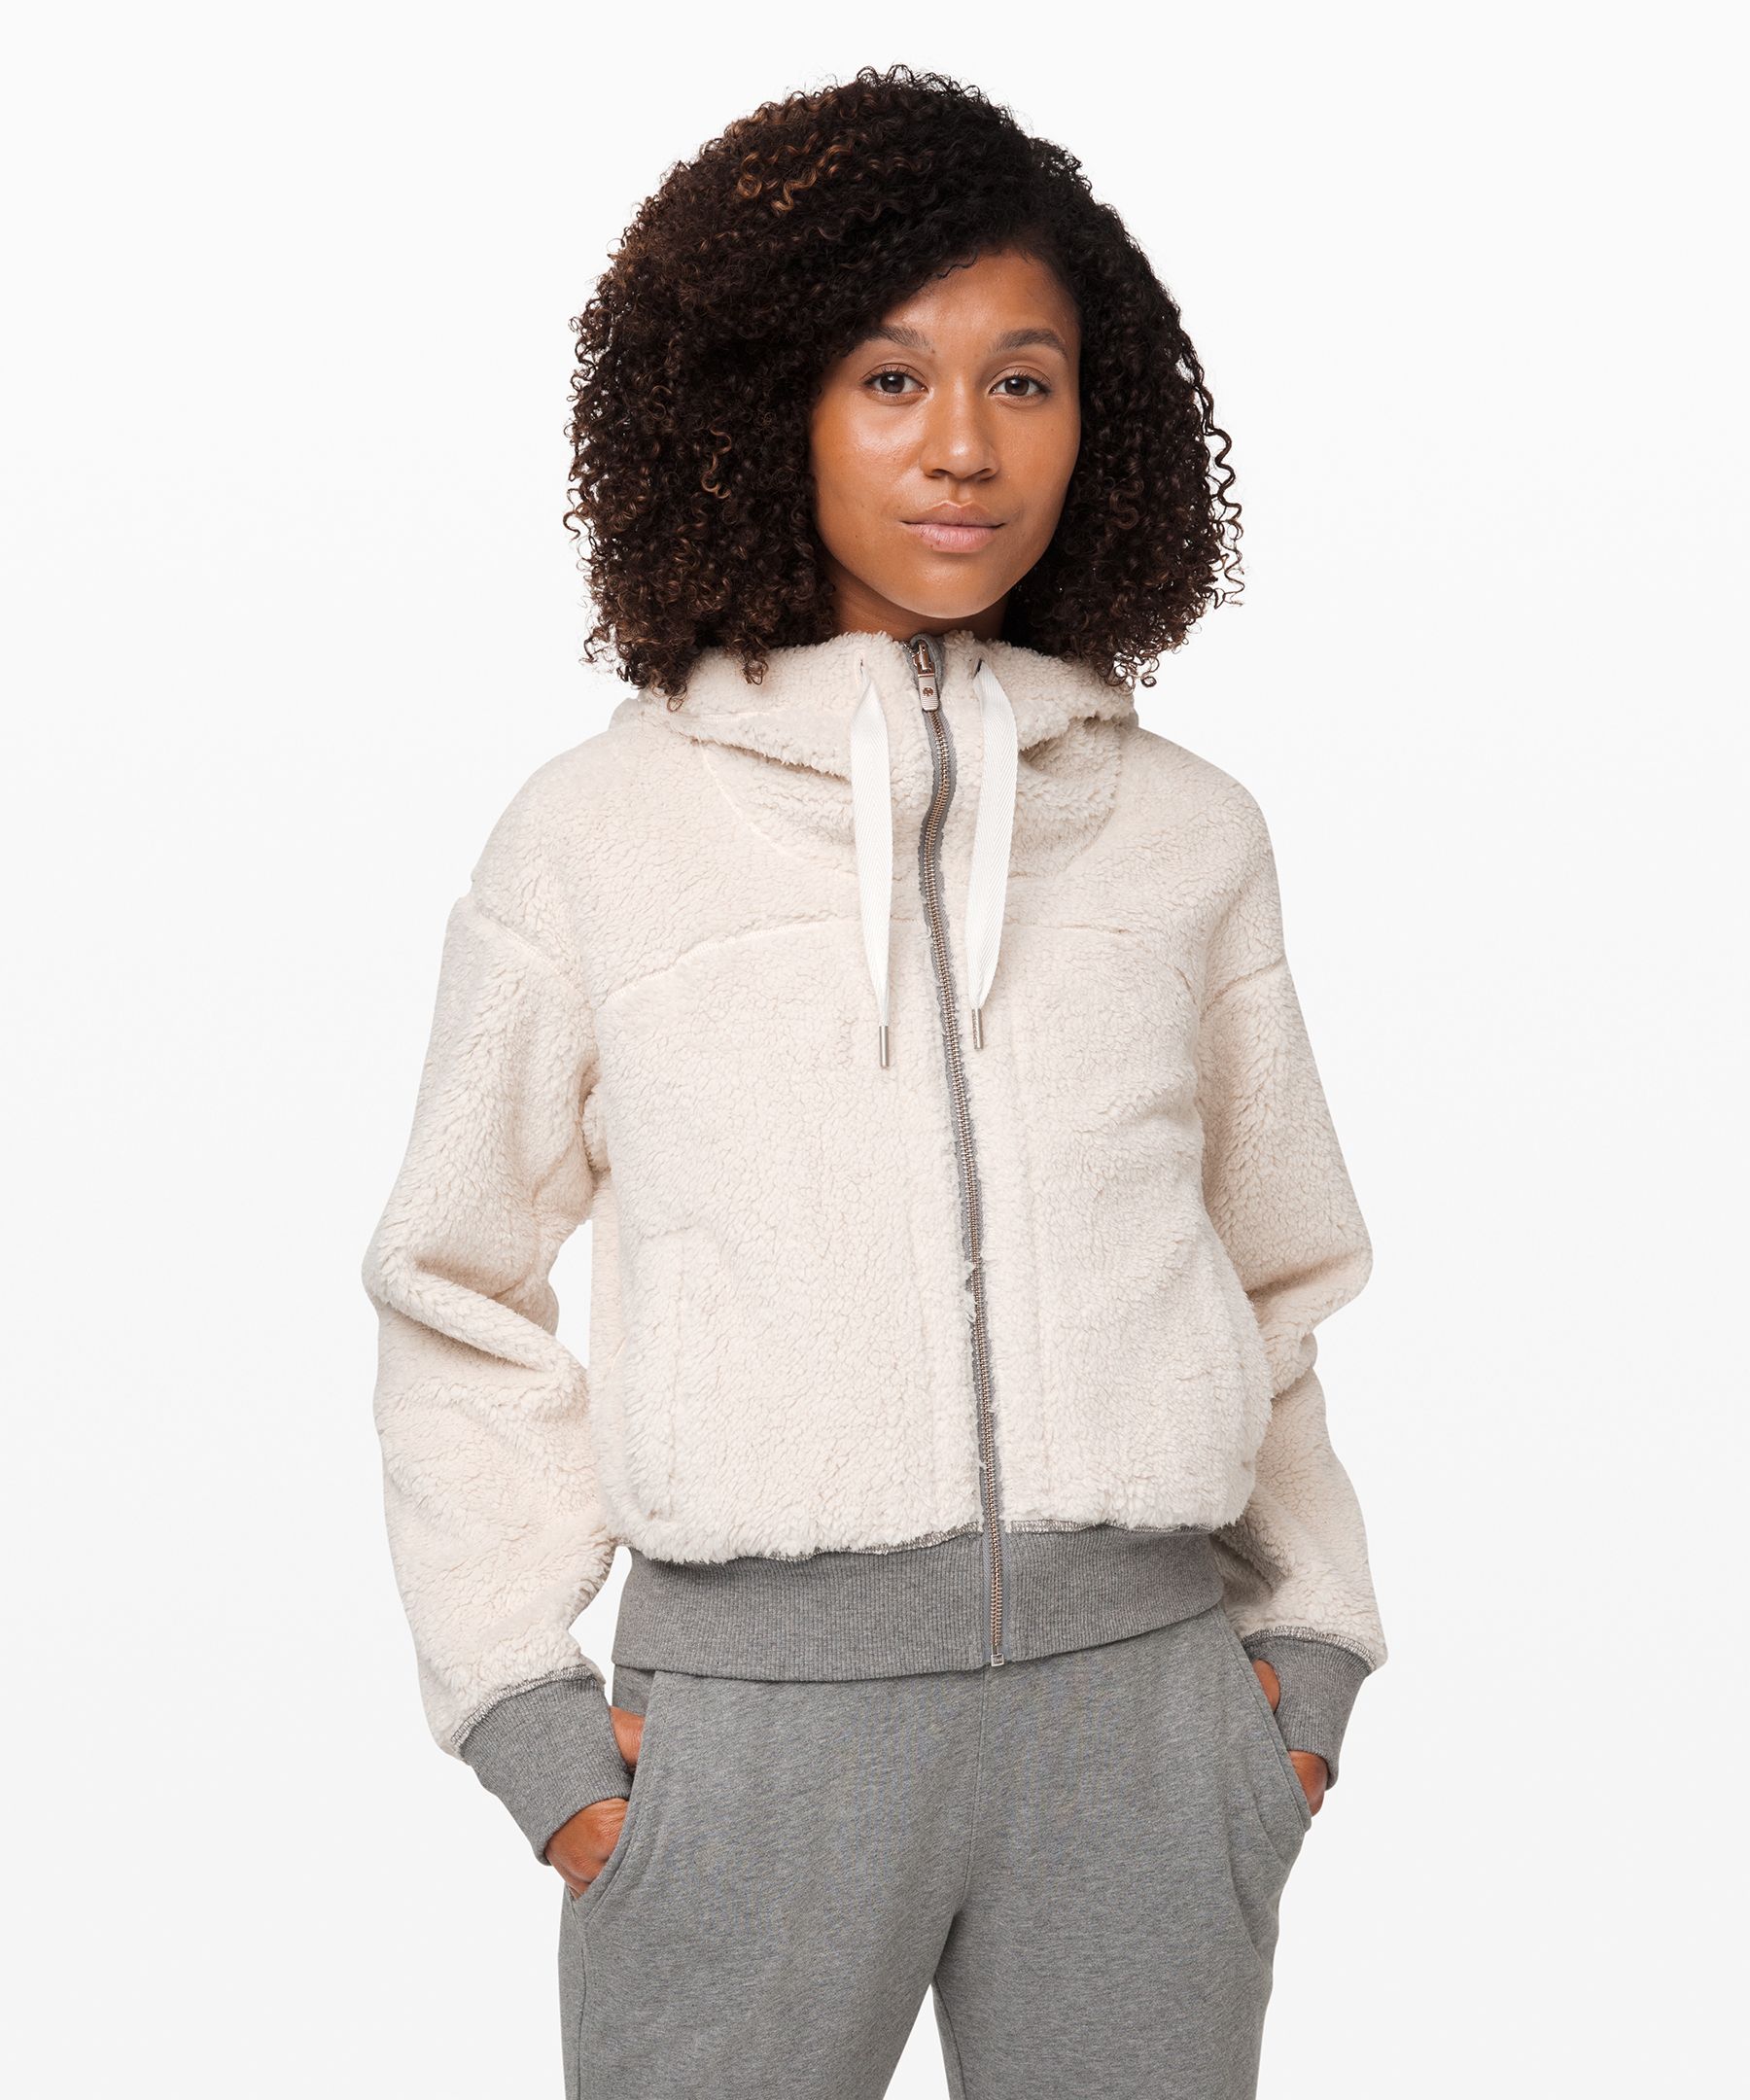 lululemon sherpa hooded jacket